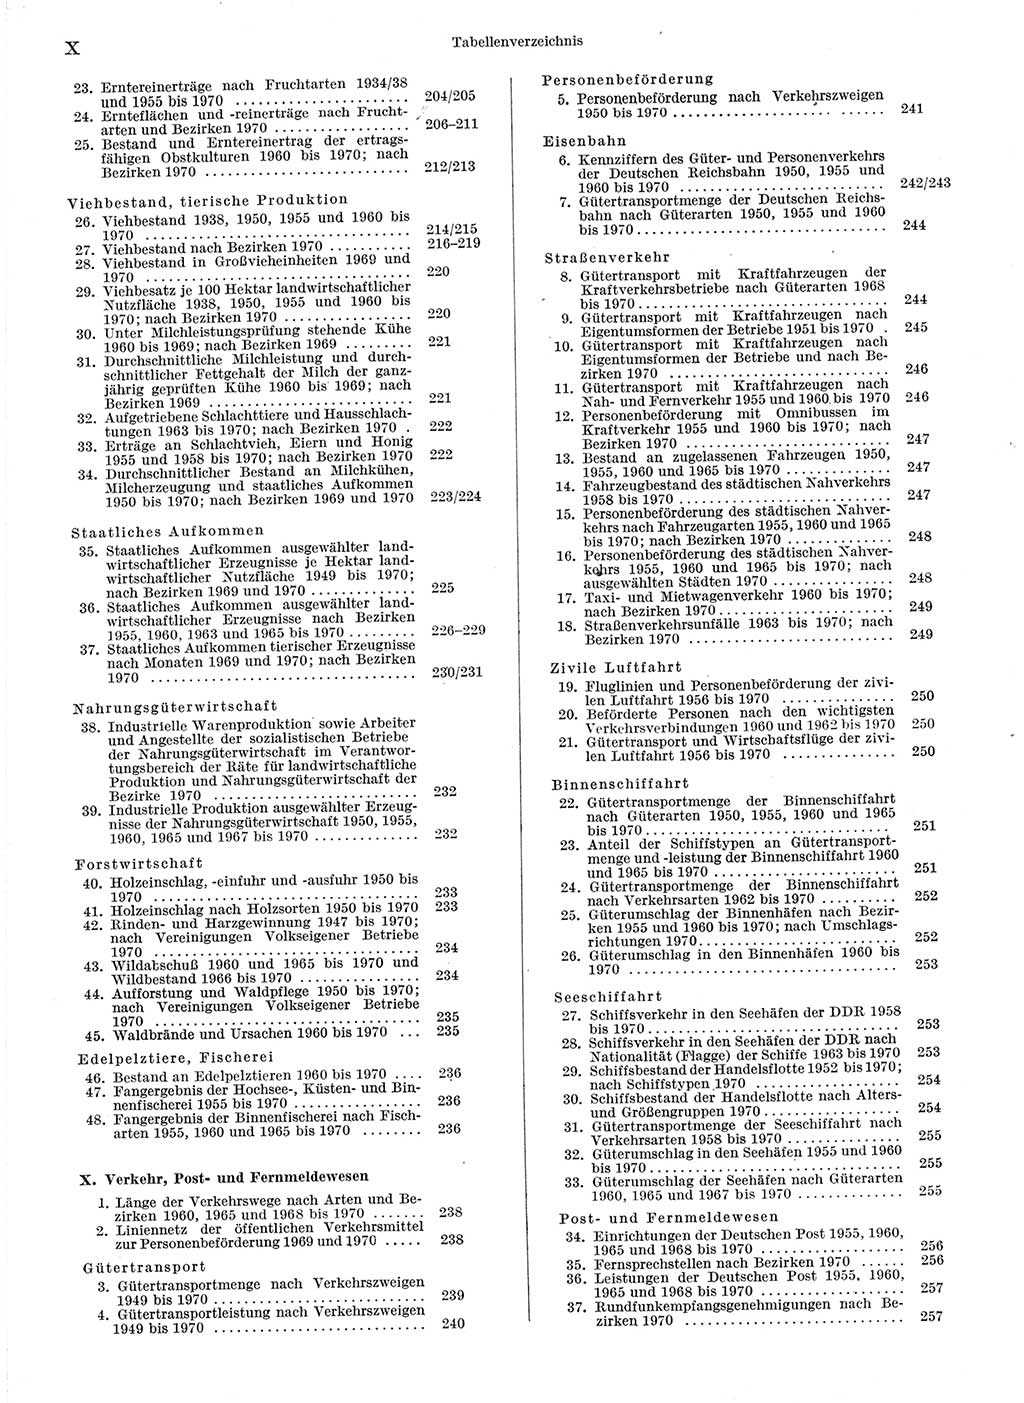 Statistisches Jahrbuch der Deutschen Demokratischen Republik (DDR) 1971, Seite 10 (Stat. Jb. DDR 1971, S. 10)